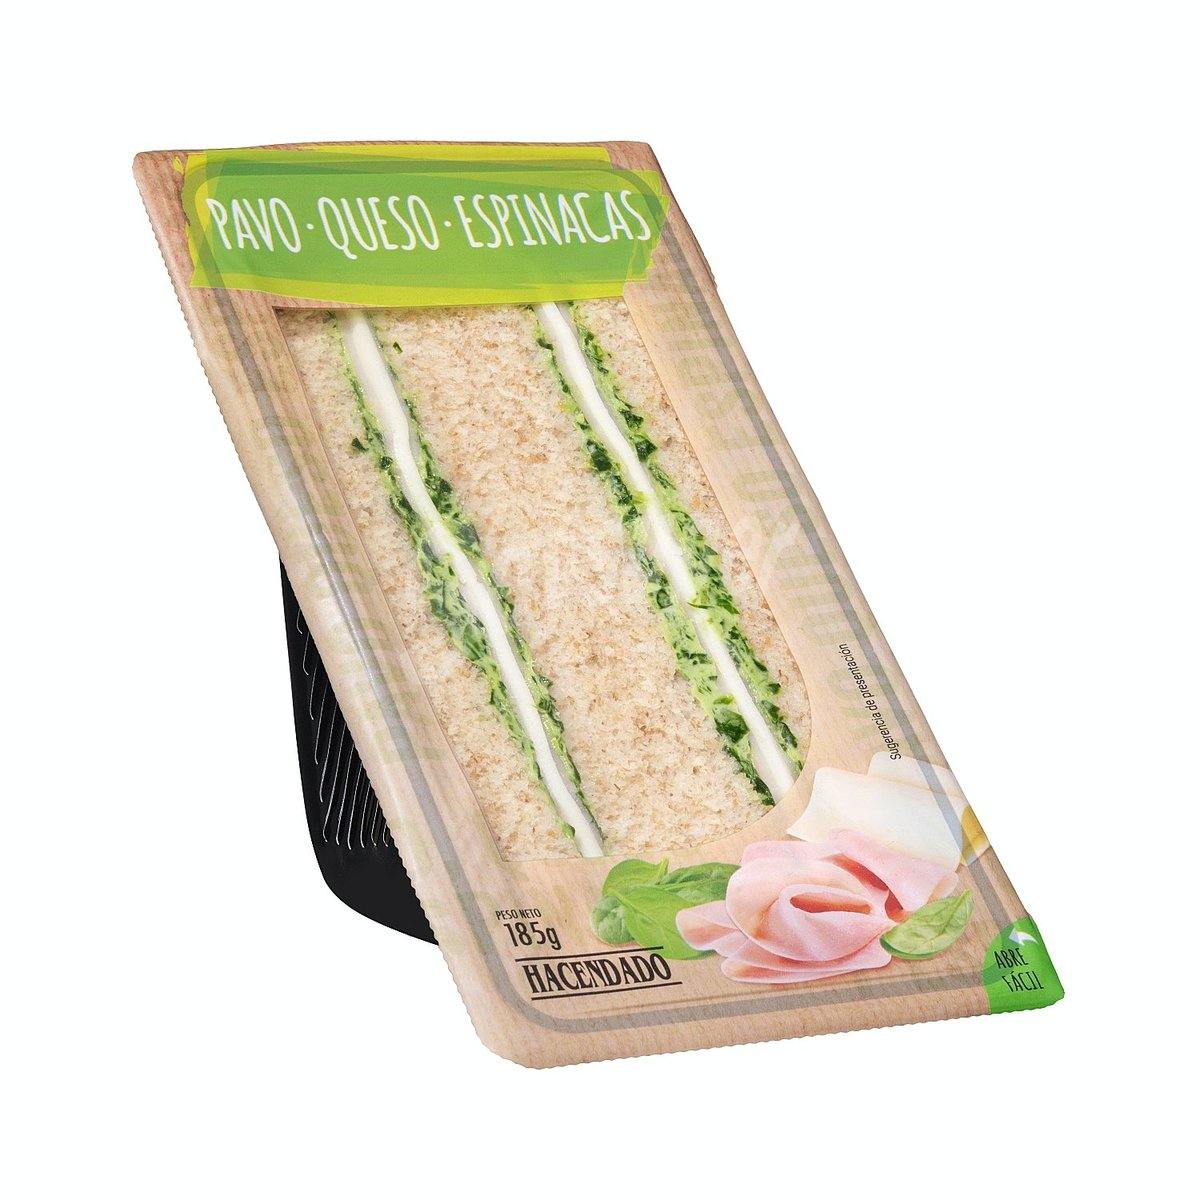 Estos productos ya no se venden en Mercadona (y queremos llorar) - Sandwich